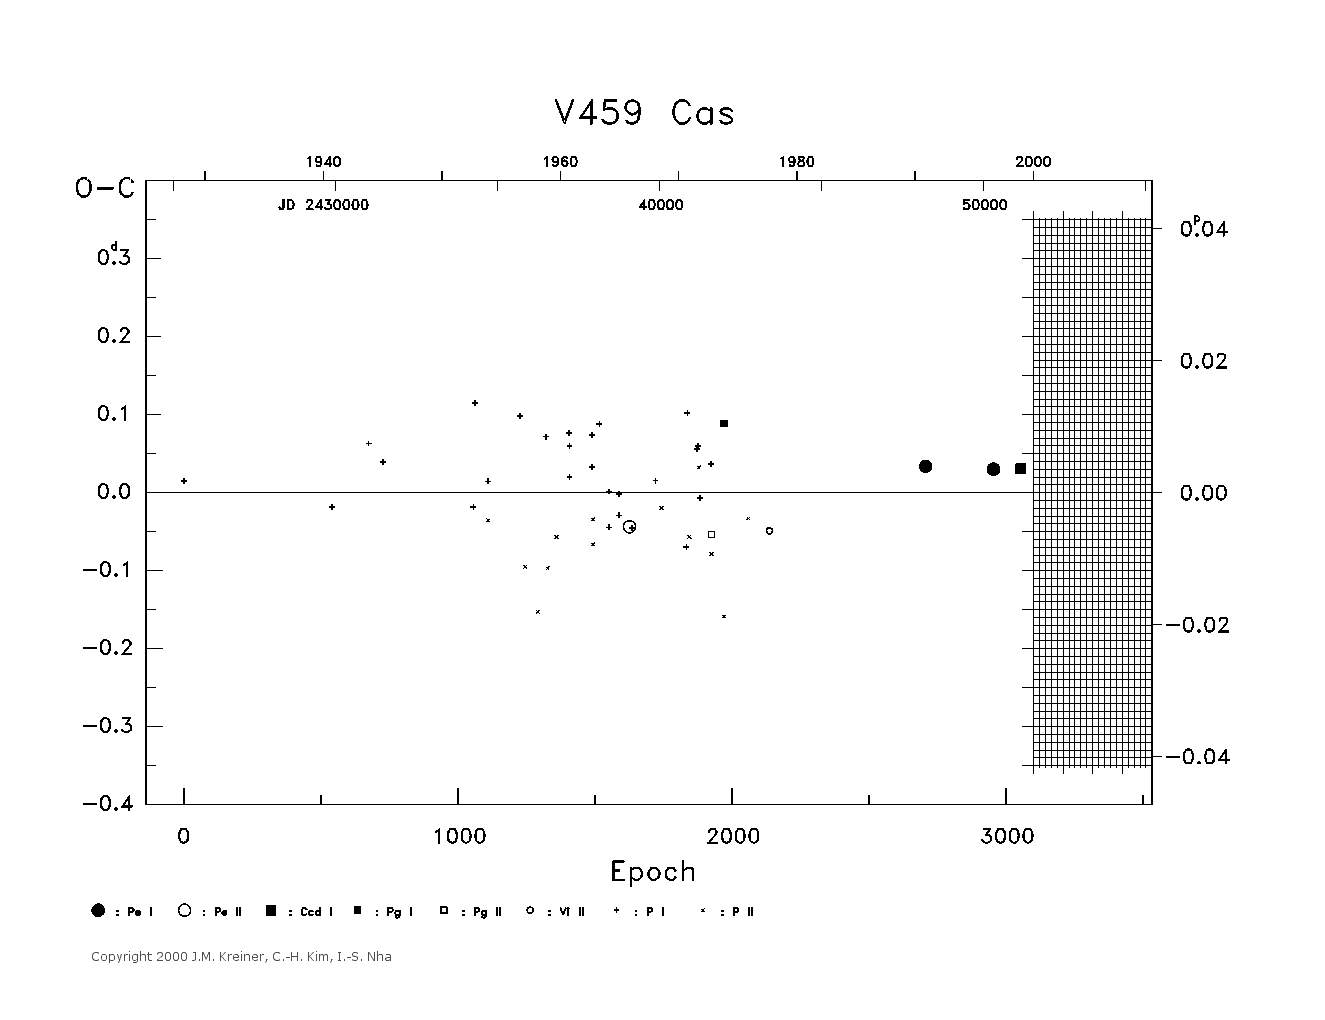 [IMAGE: large V459 CAS O-C diagram]